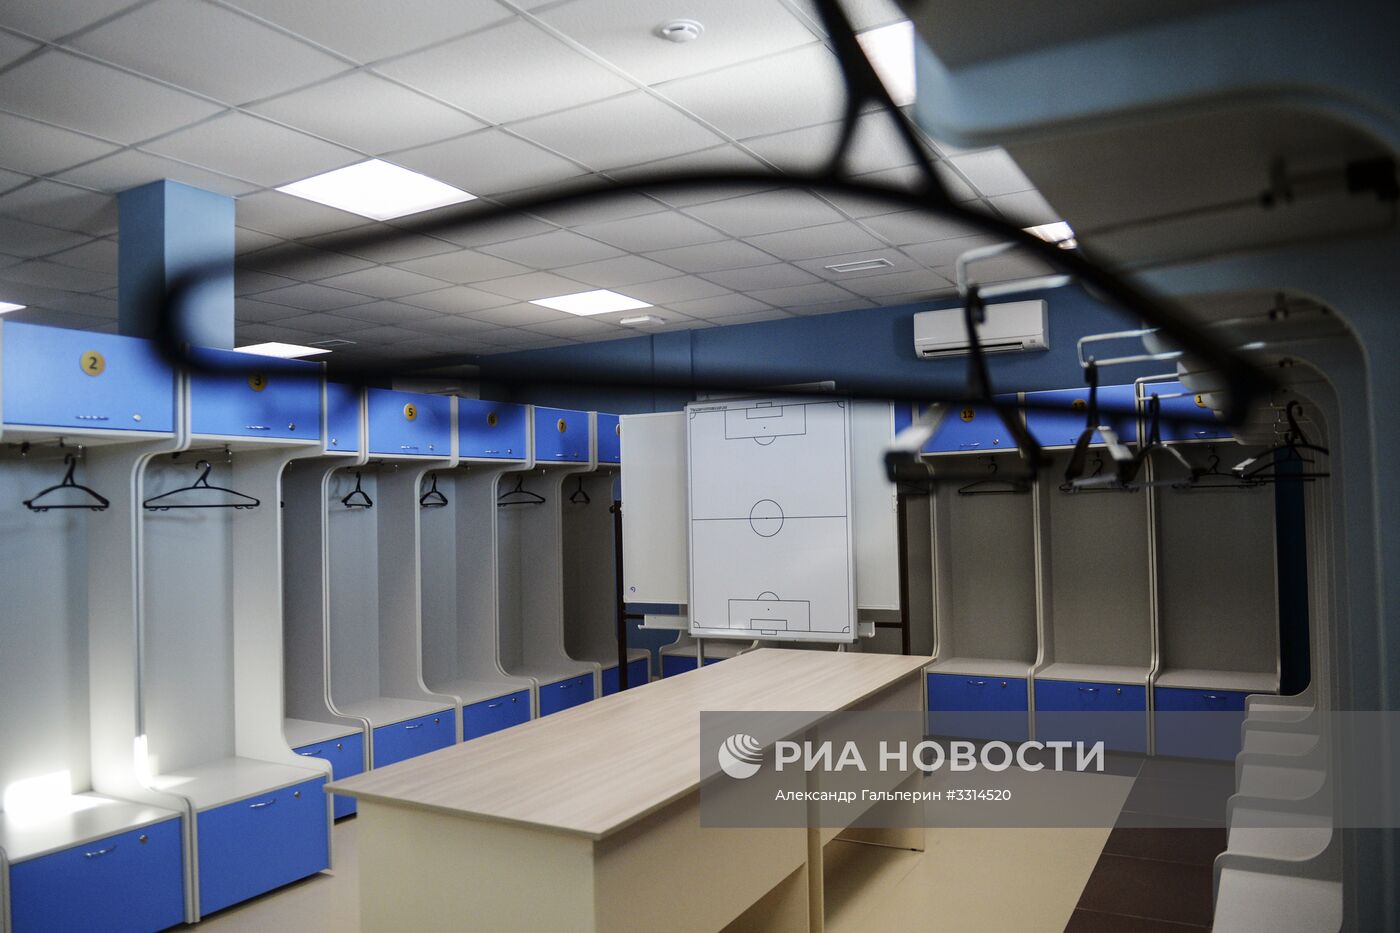 Подготовка инфраструктурных объектов Санкт-Петербурга к ЧМ-2018 по футболу